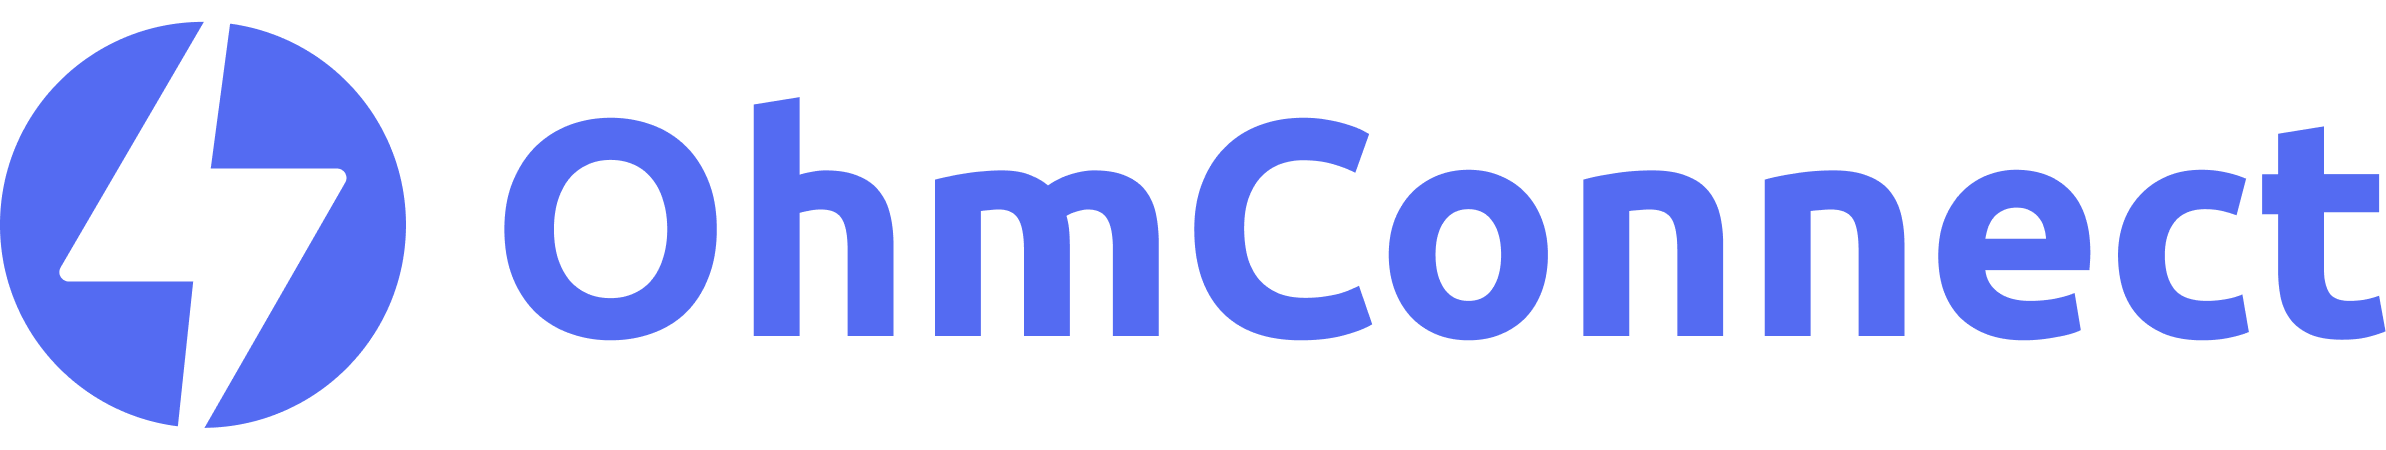 ohmconnect-logo-blue copy